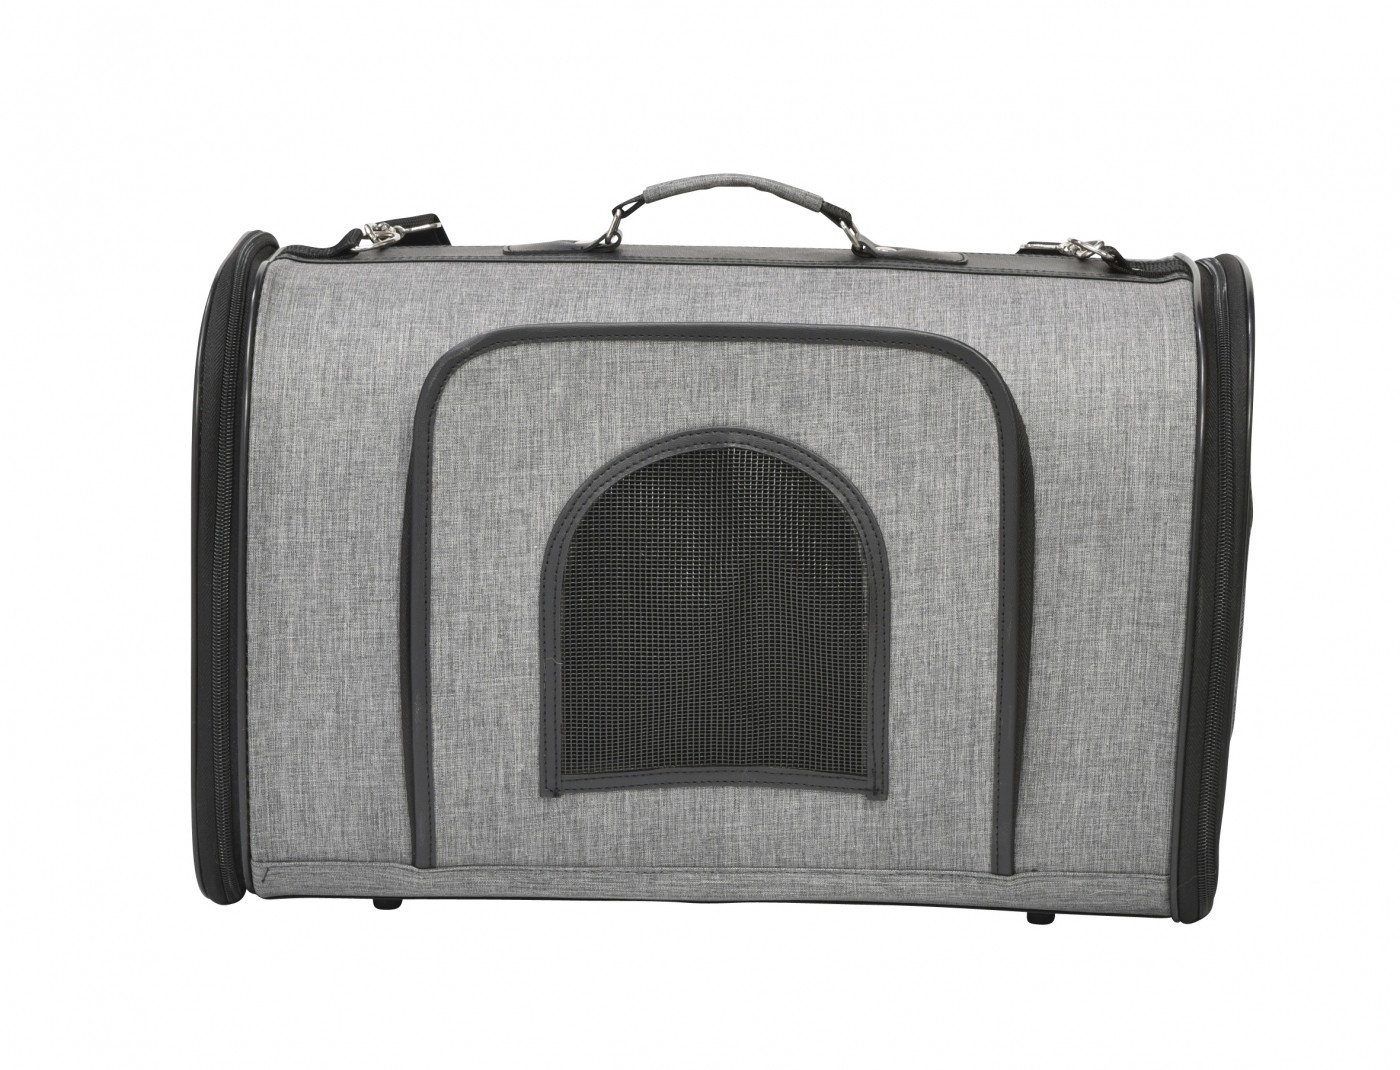 Reisetasche für Hunde Journey BOBBY - Verschiedene Größen